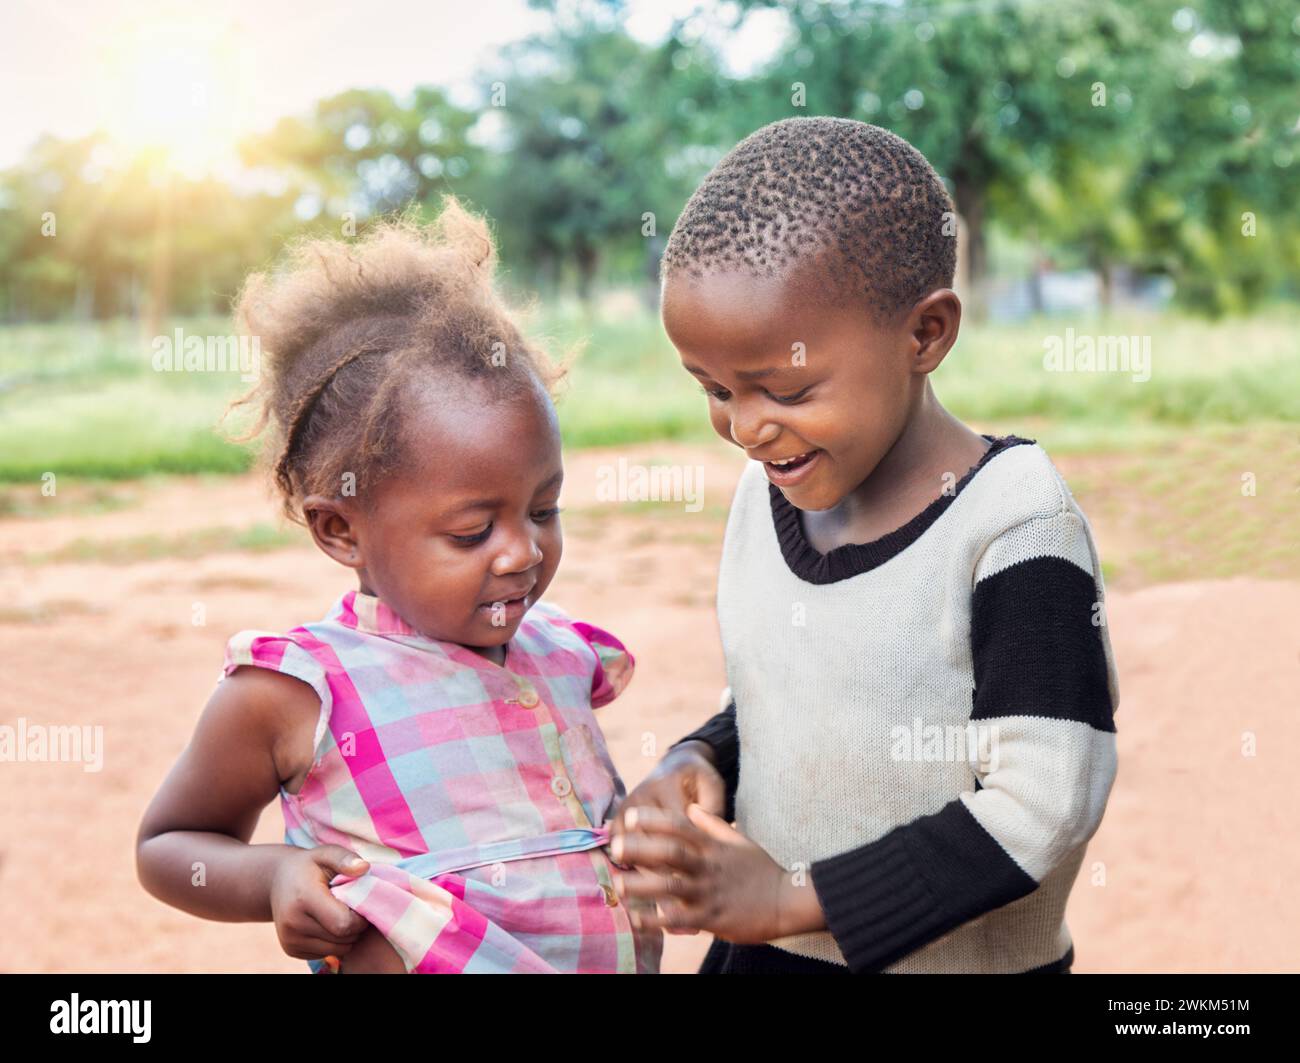 Des ONG bénévoles du monde entier aident les enfants africains. Heureux garçon et fille du village jouant dans la cour. Banque D'Images